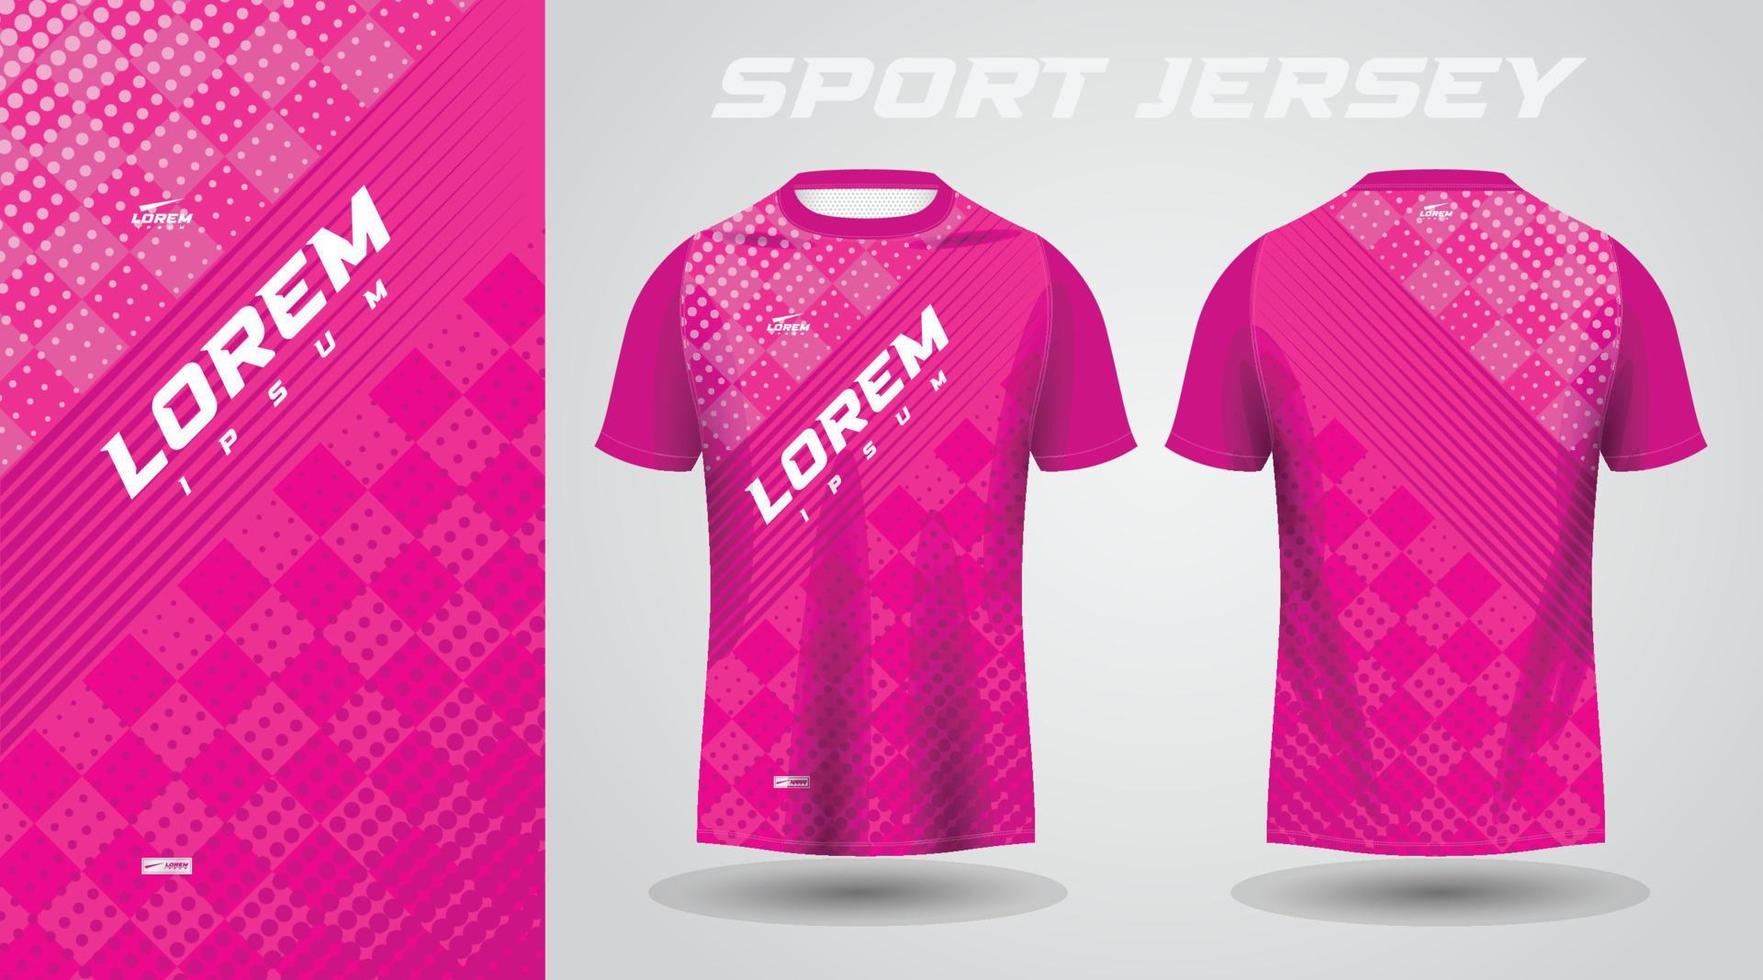 rosa skjorta fotboll fotboll sport jersey mall design attrapp vektor